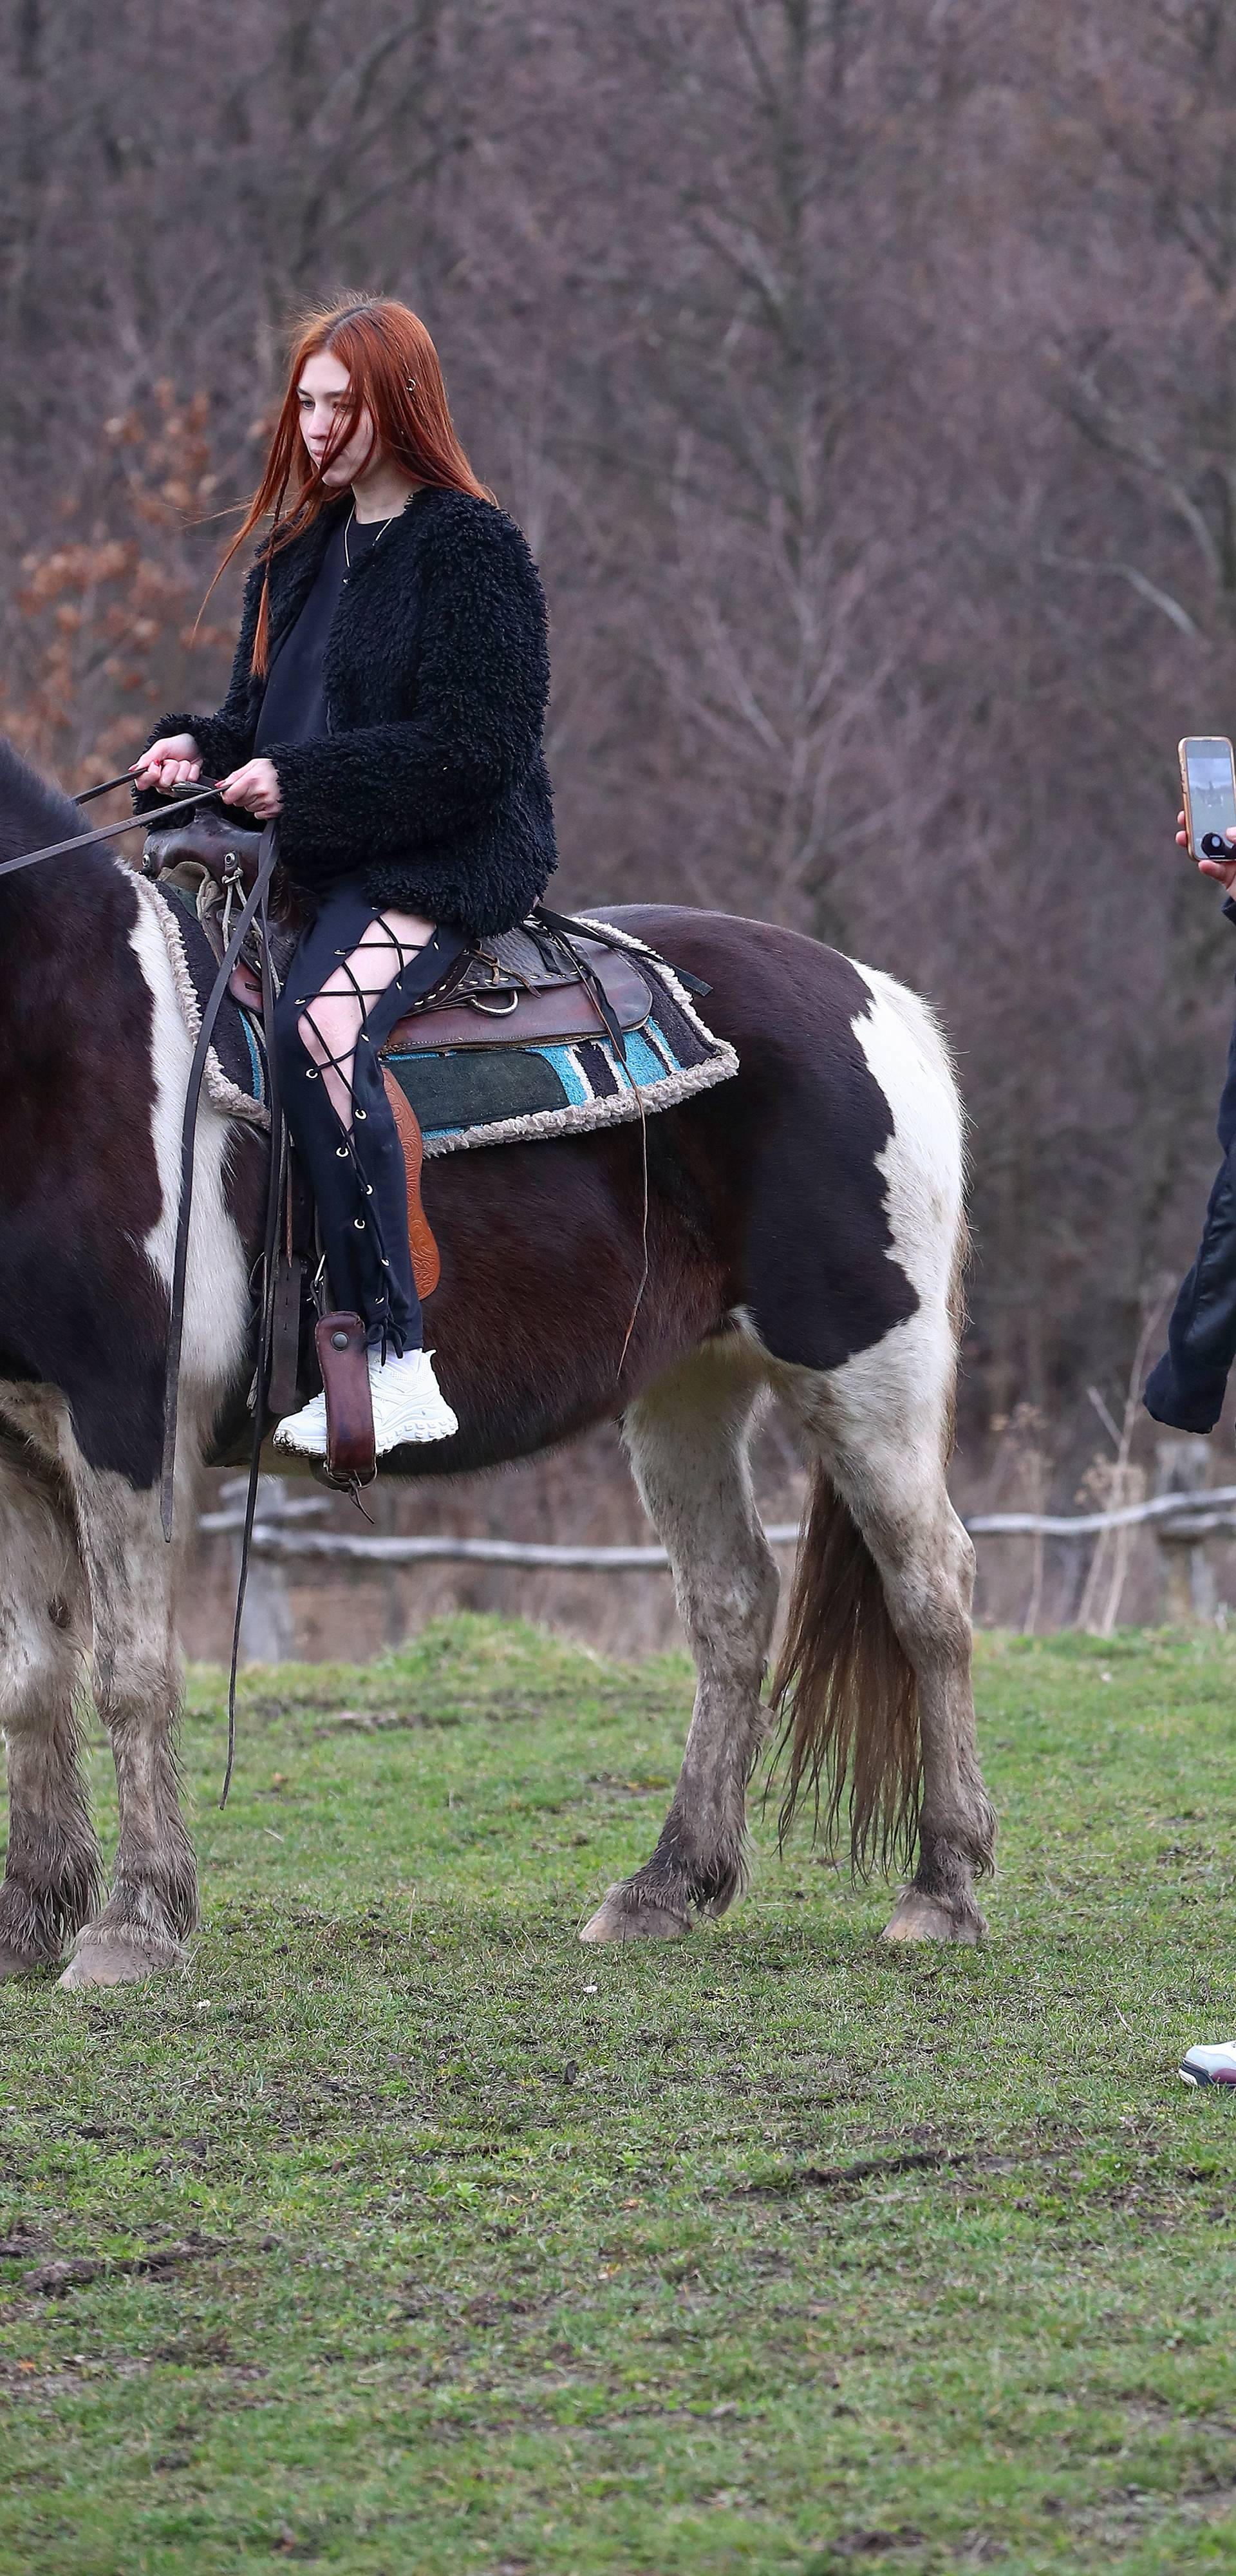 Laviv: Ukrajinski ratni vojni invalidi rehabilitiraju se uz jahanje konja